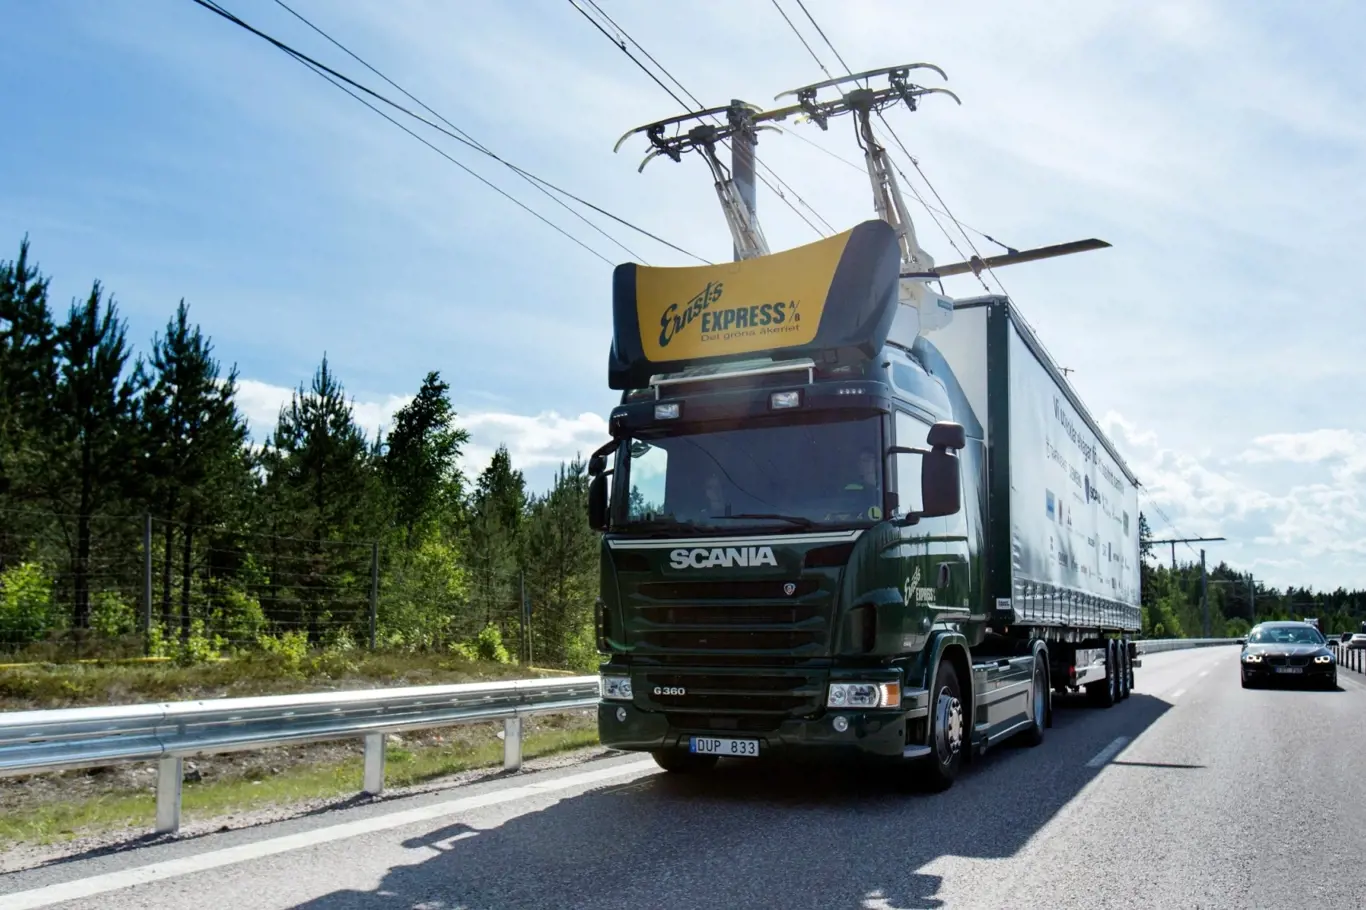 Elektrifikovaný kamion Scania poháněný tzv. vodivým elektrickým pohonem.